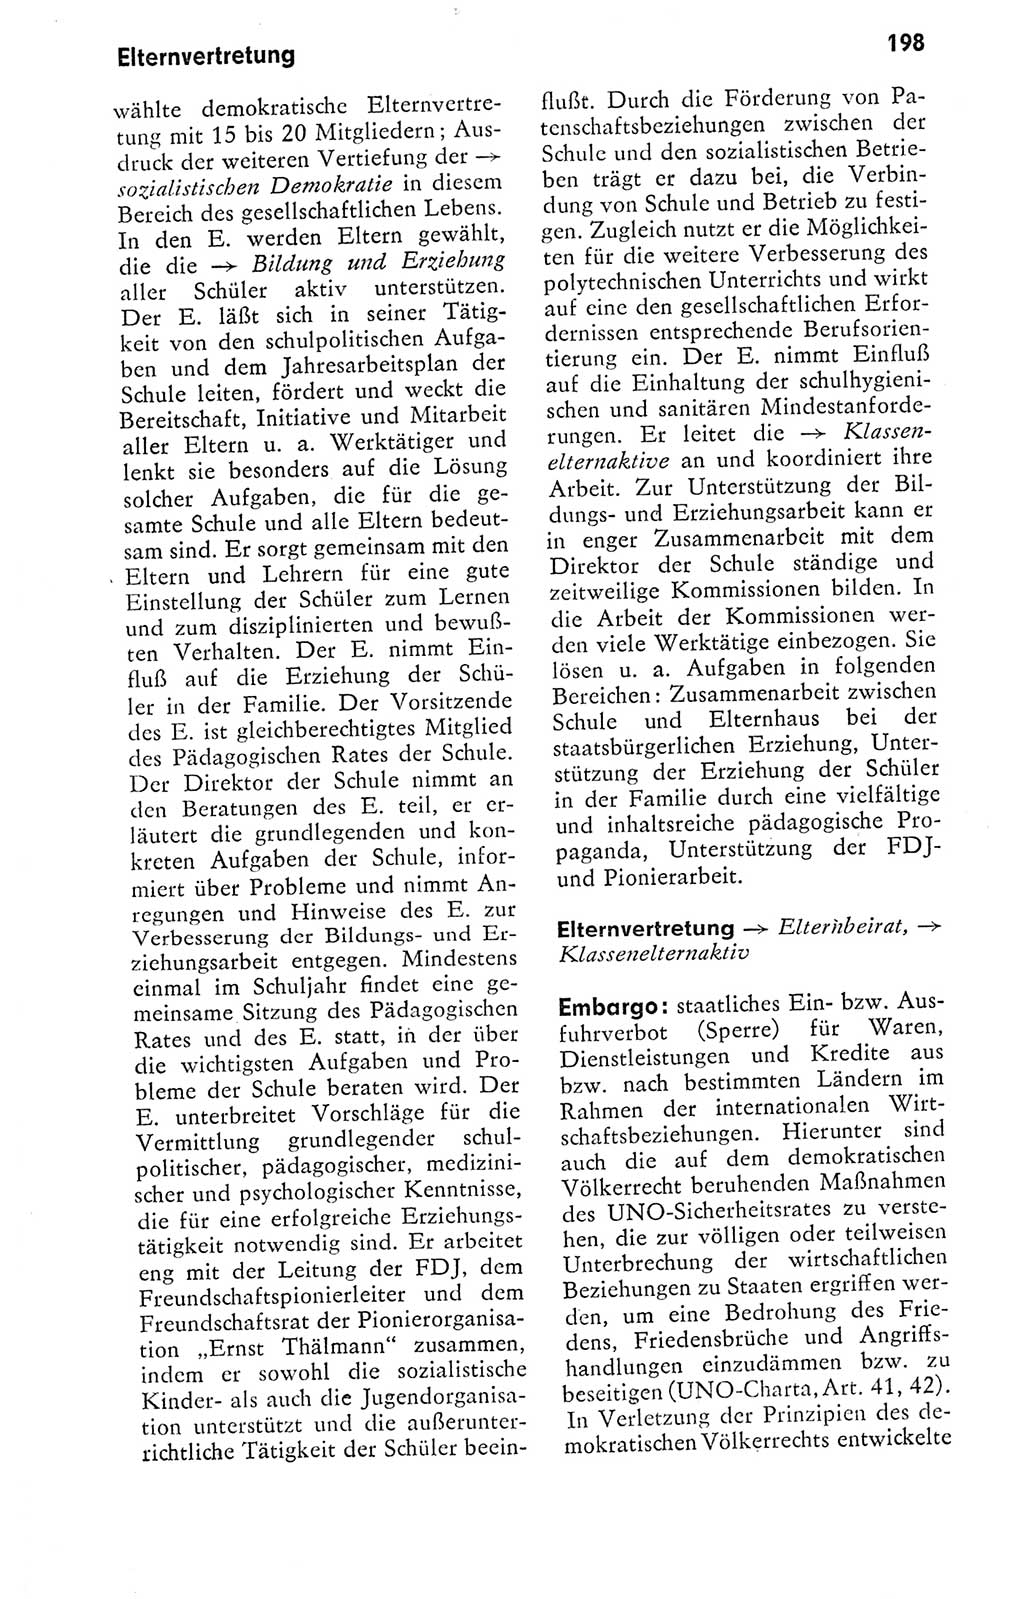 Kleines politisches Wörterbuch [Deutsche Demokratische Republik (DDR)] 1978, Seite 198 (Kl. pol. Wb. DDR 1978, S. 198)